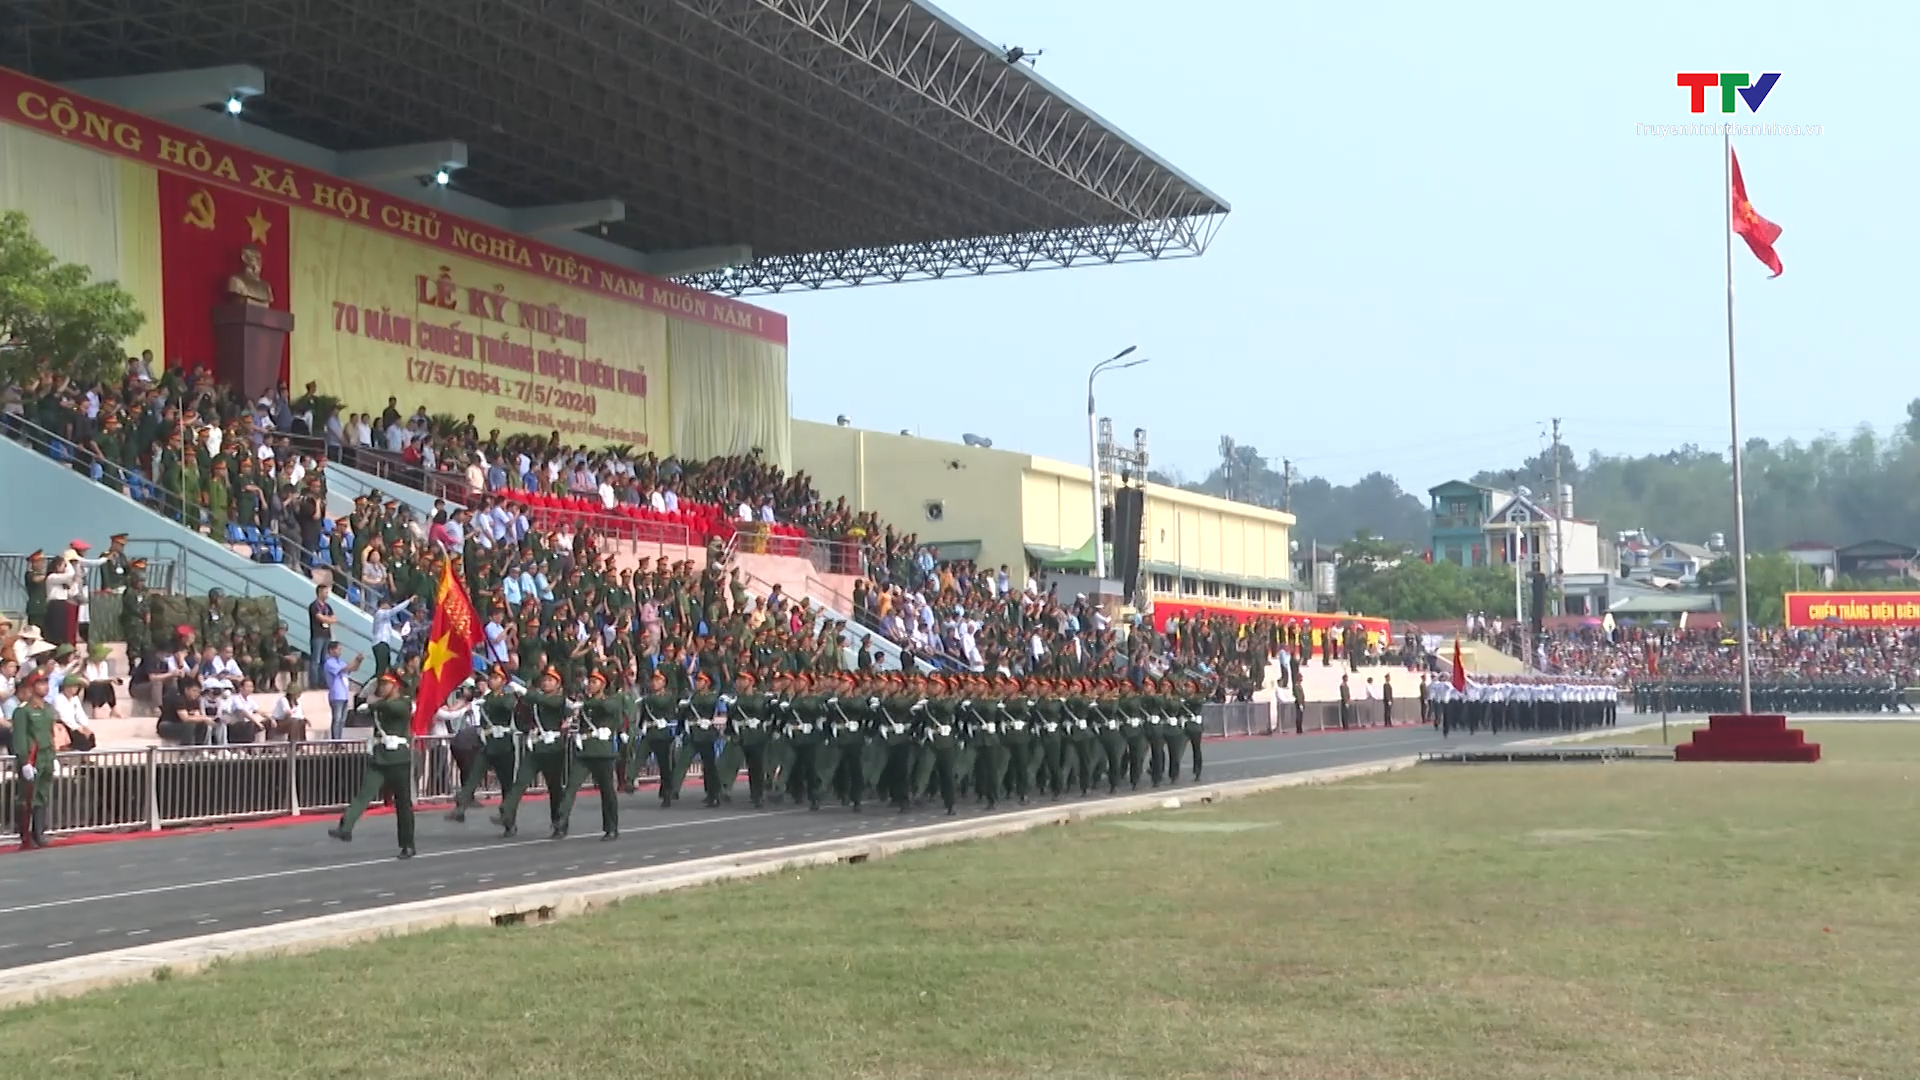 Sơ duyệt lễ kỷ niệm 70 năm Chiến thắng Điện Biên Phủ- Ảnh 1.